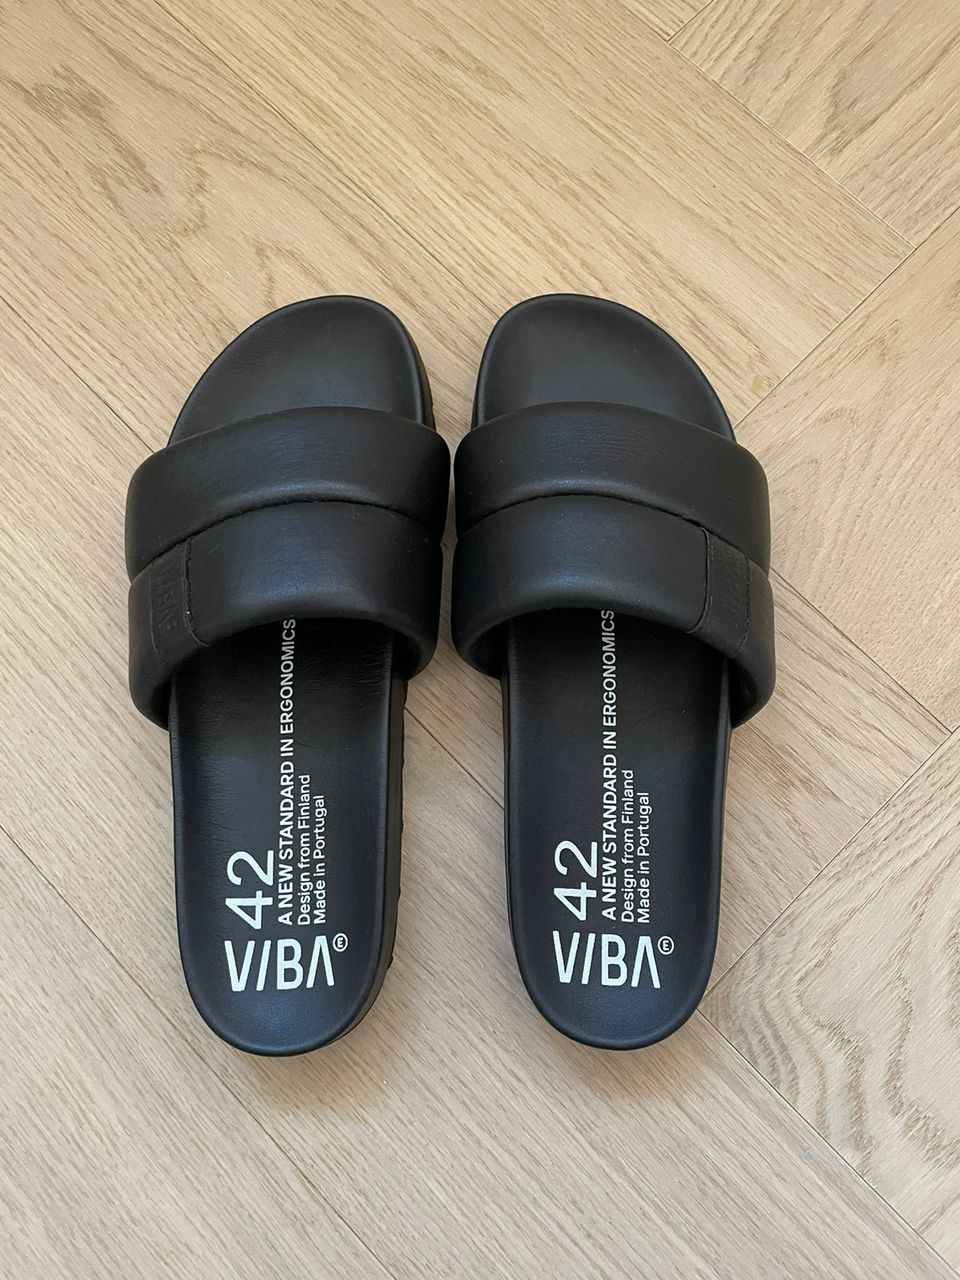 VIBAe Shoes